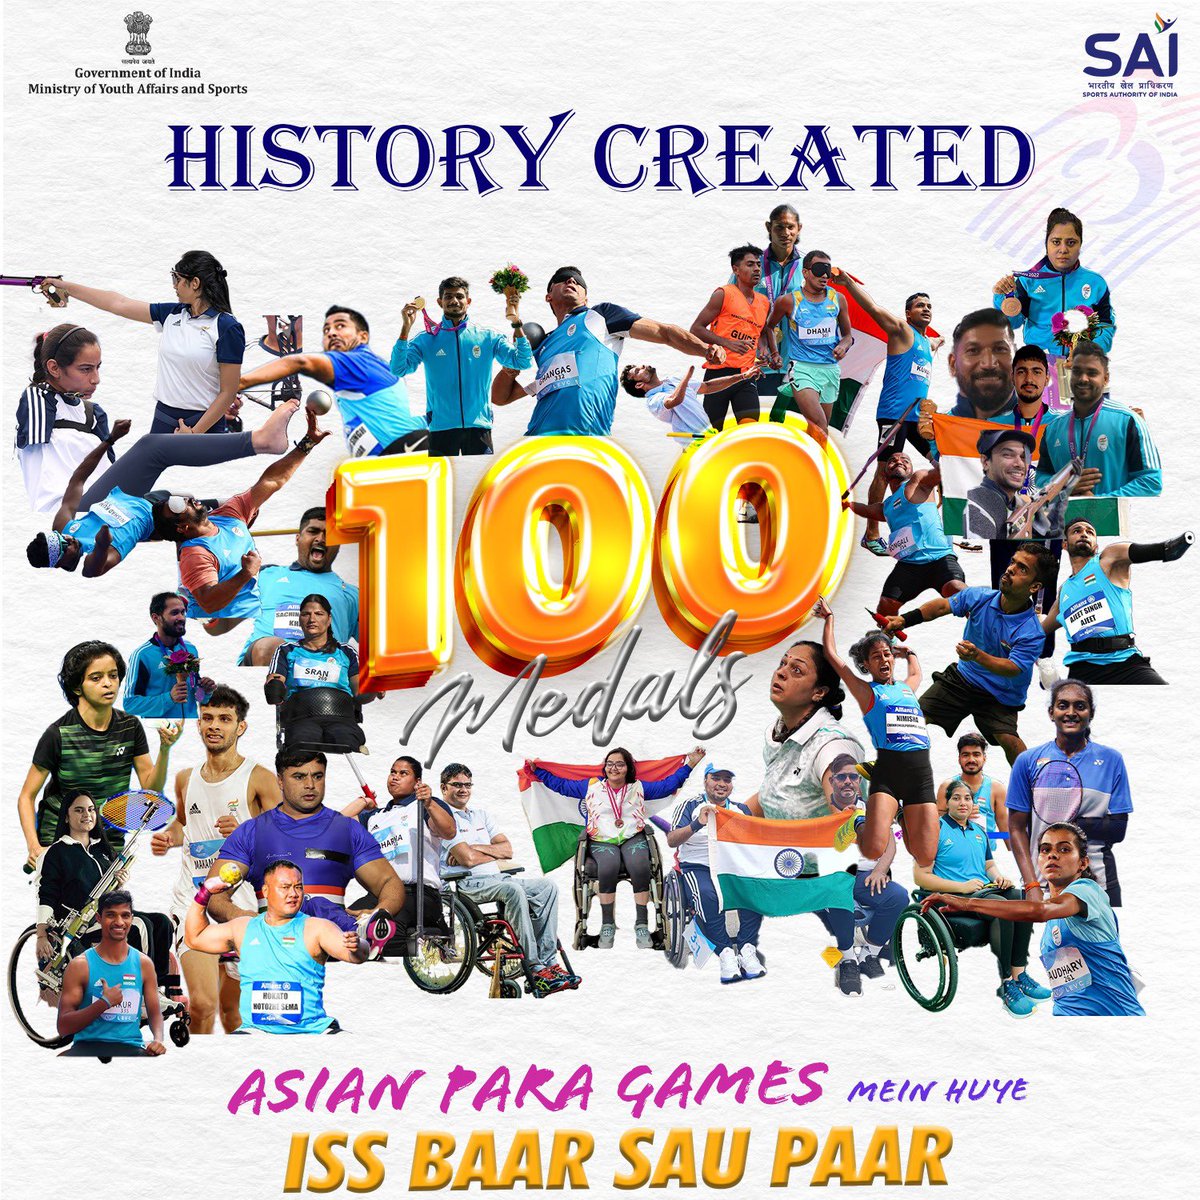 सभी खिलाड़ियों को बहुत बहुत बधाई 

#AsianParaGames #IssBaar100Paar